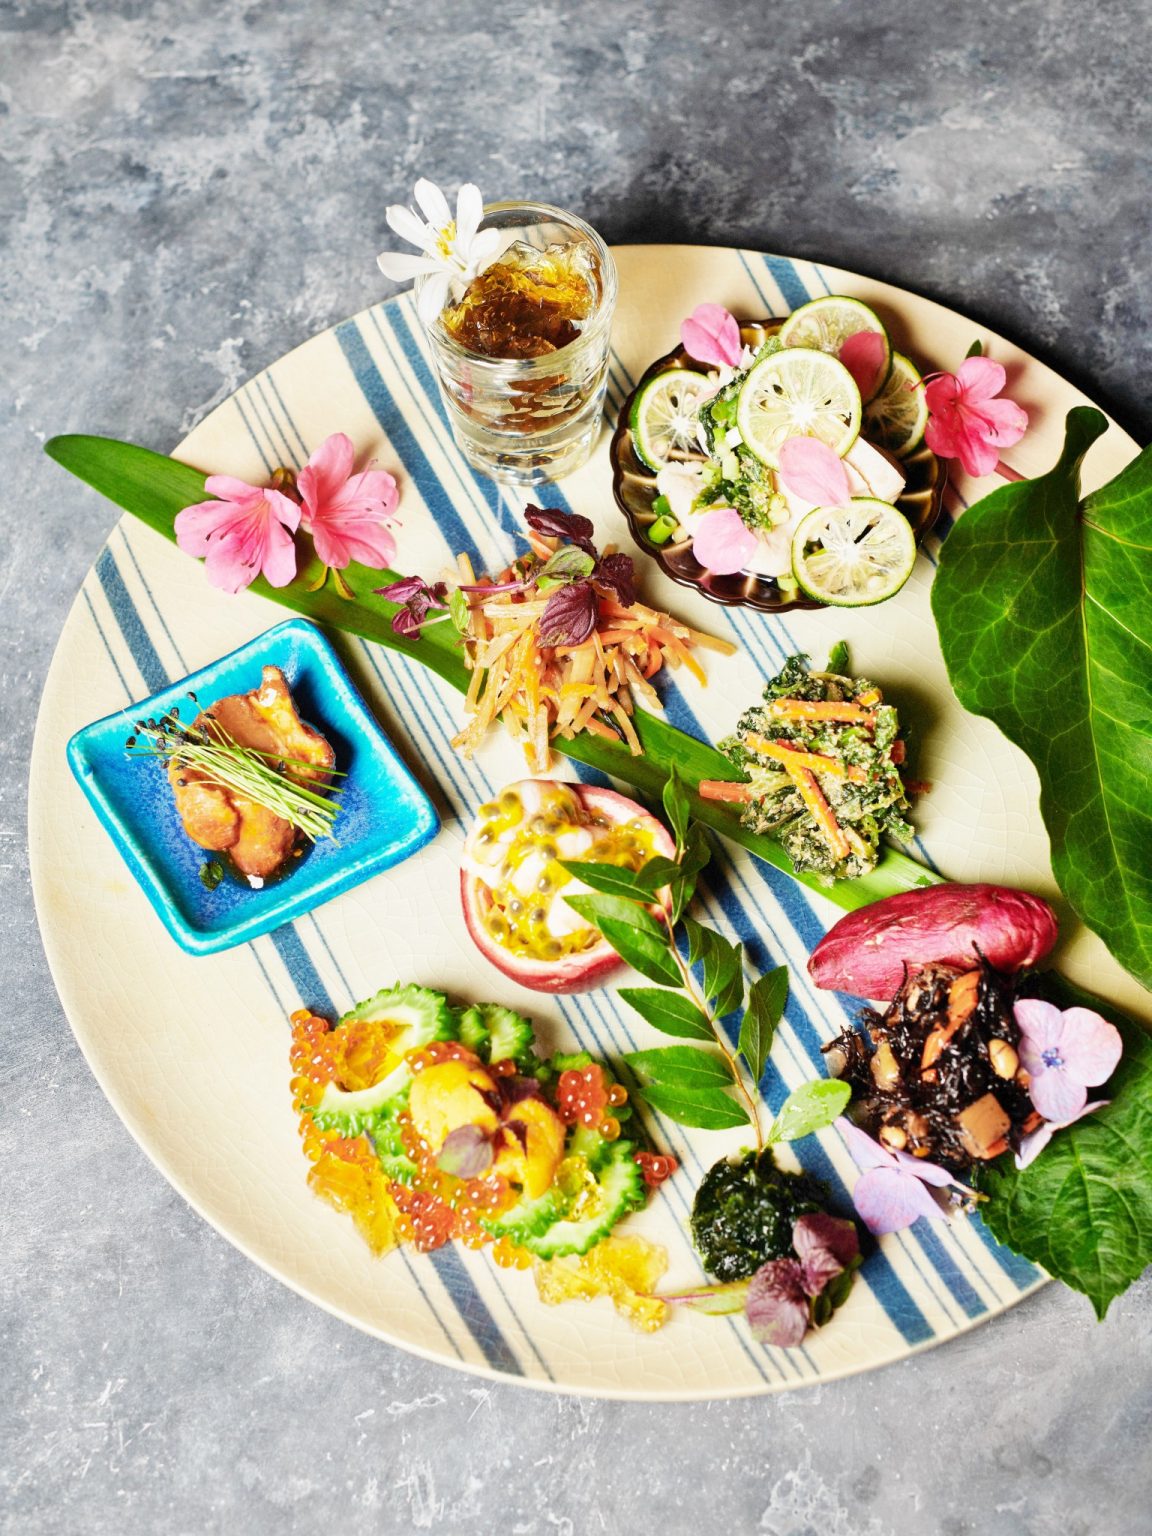 沖縄の伝統料理を見つめなおし、新しい形で提案する〈沖縄ストックストア〉。